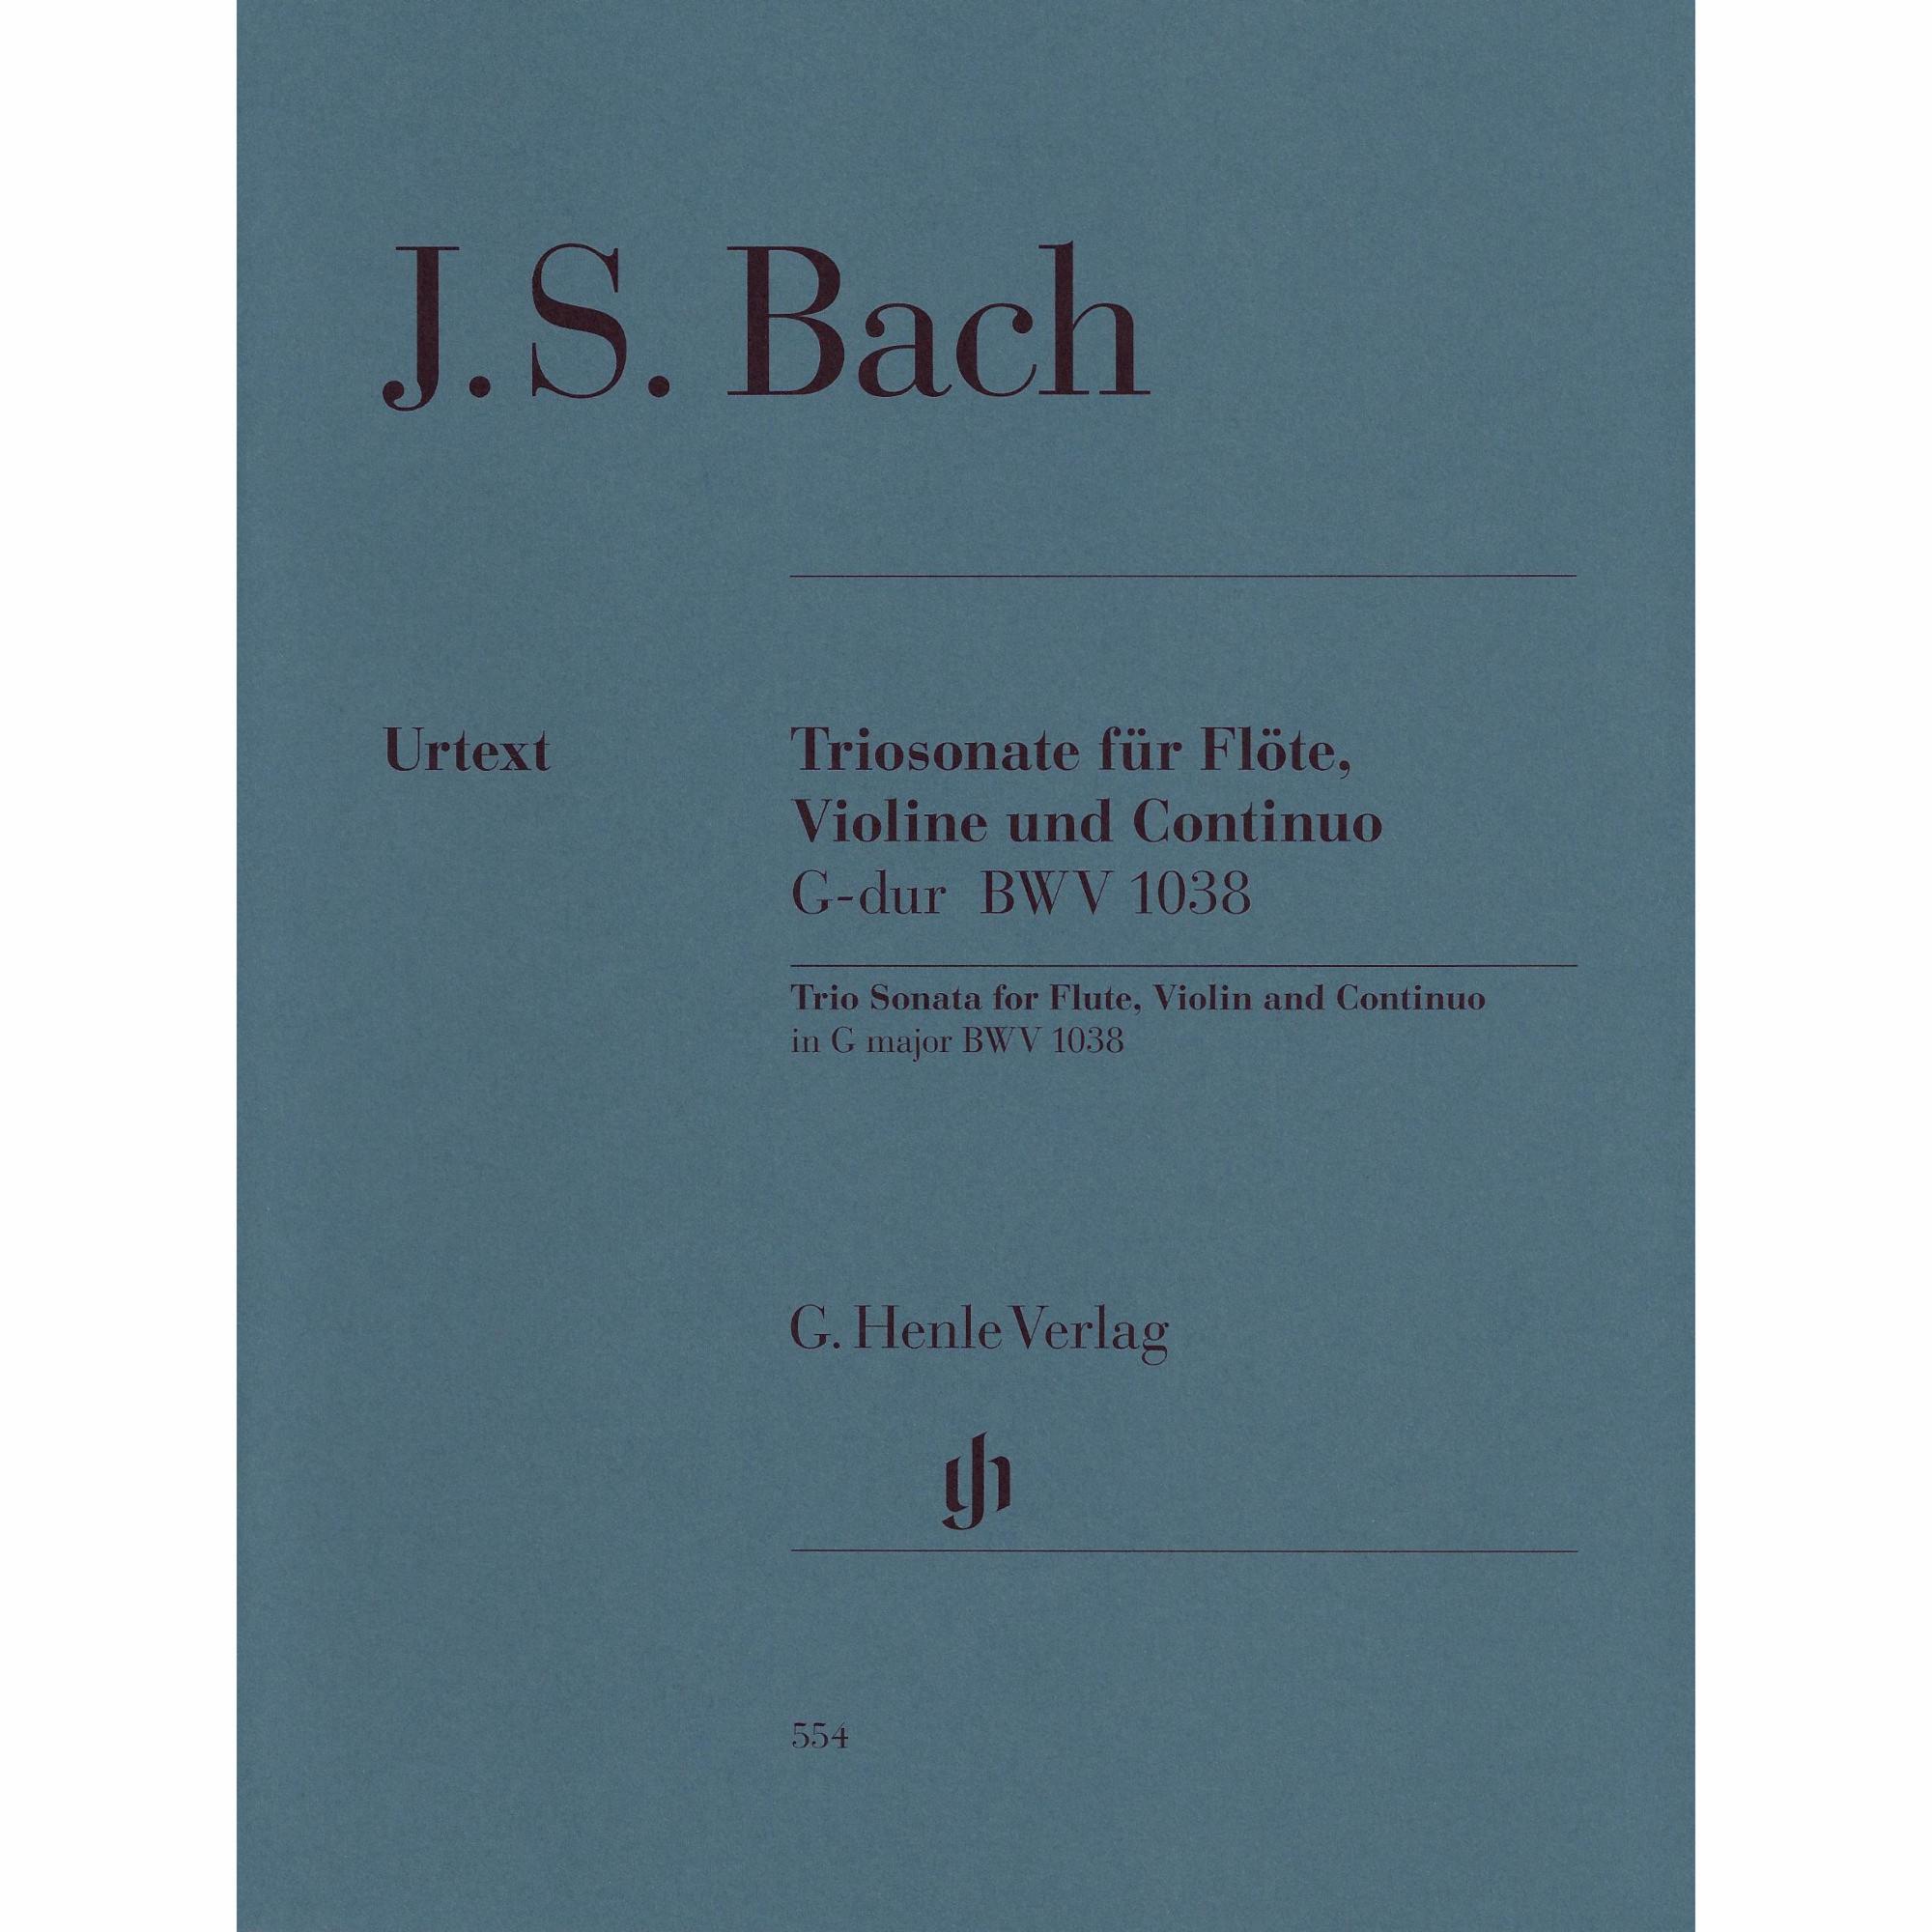 Bach -- Trio Sonata in G Major, BWV 1038 for Flute, Violin and Continuo